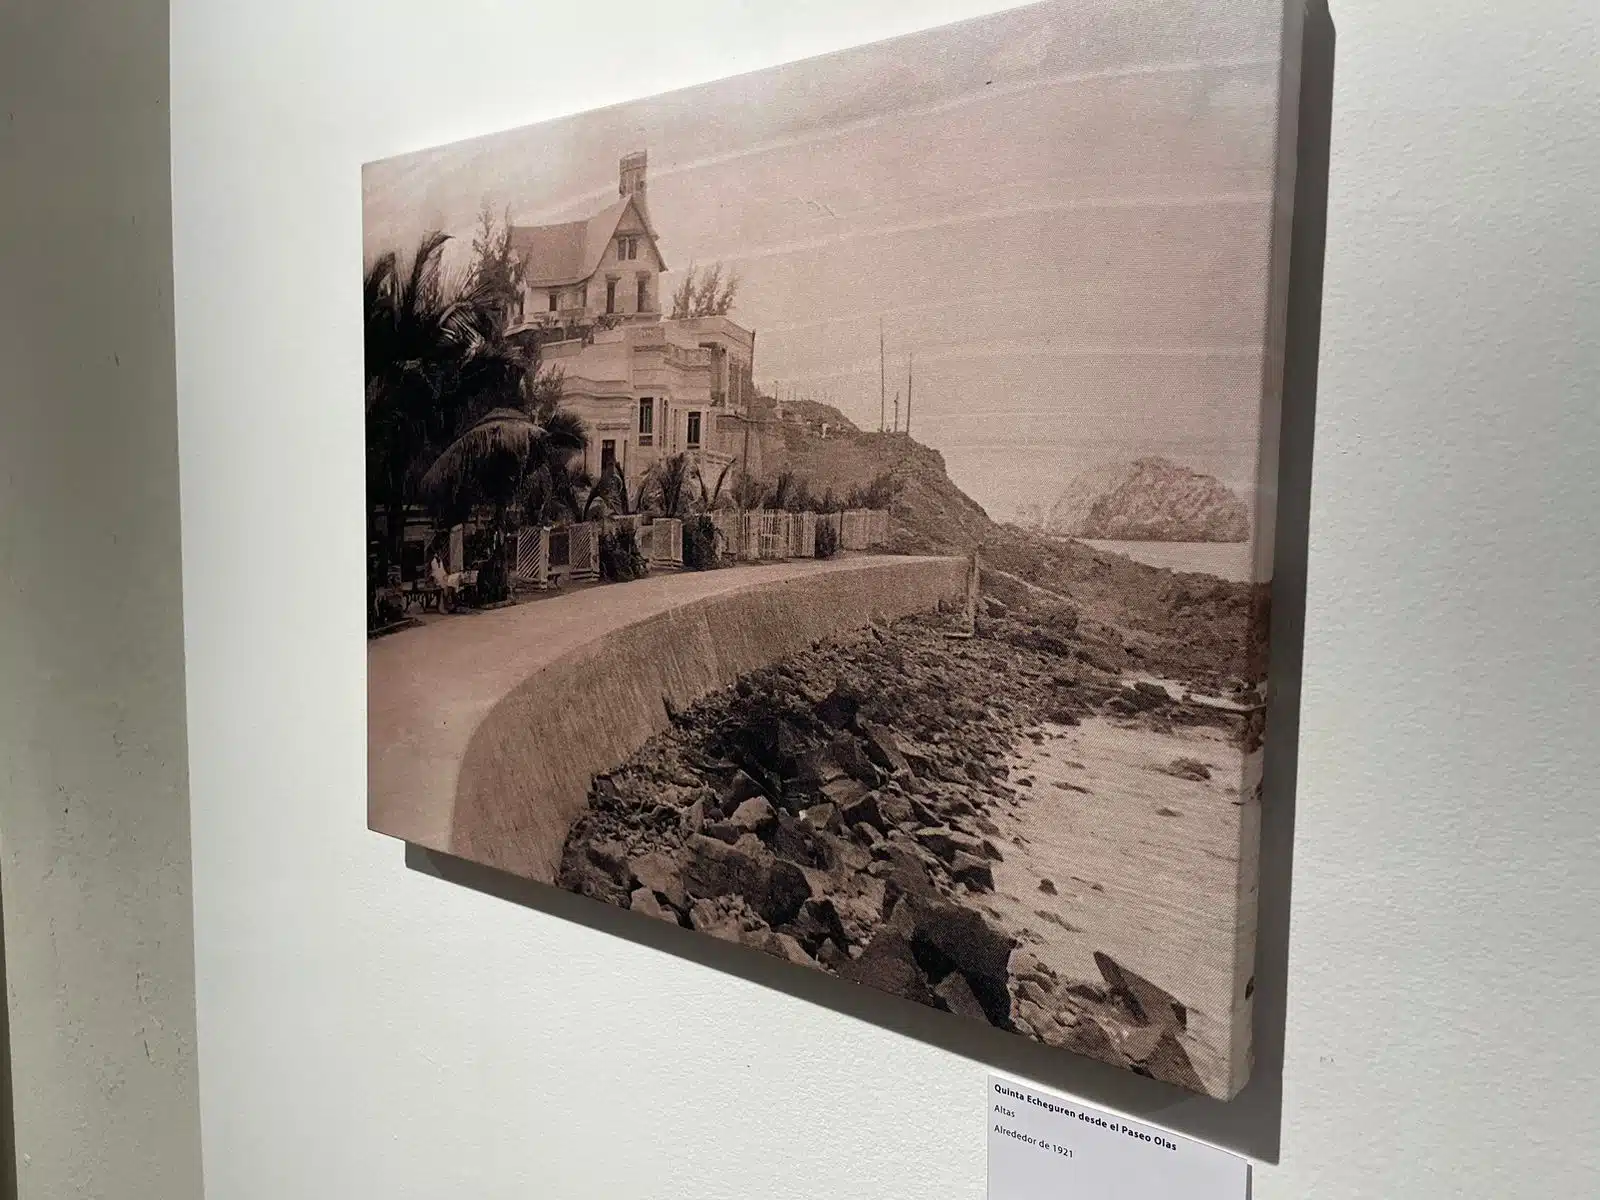 Exposición fotográfica “Imagen y memoria en una postal” de José Luis Echeagaray en la Galería Rubio